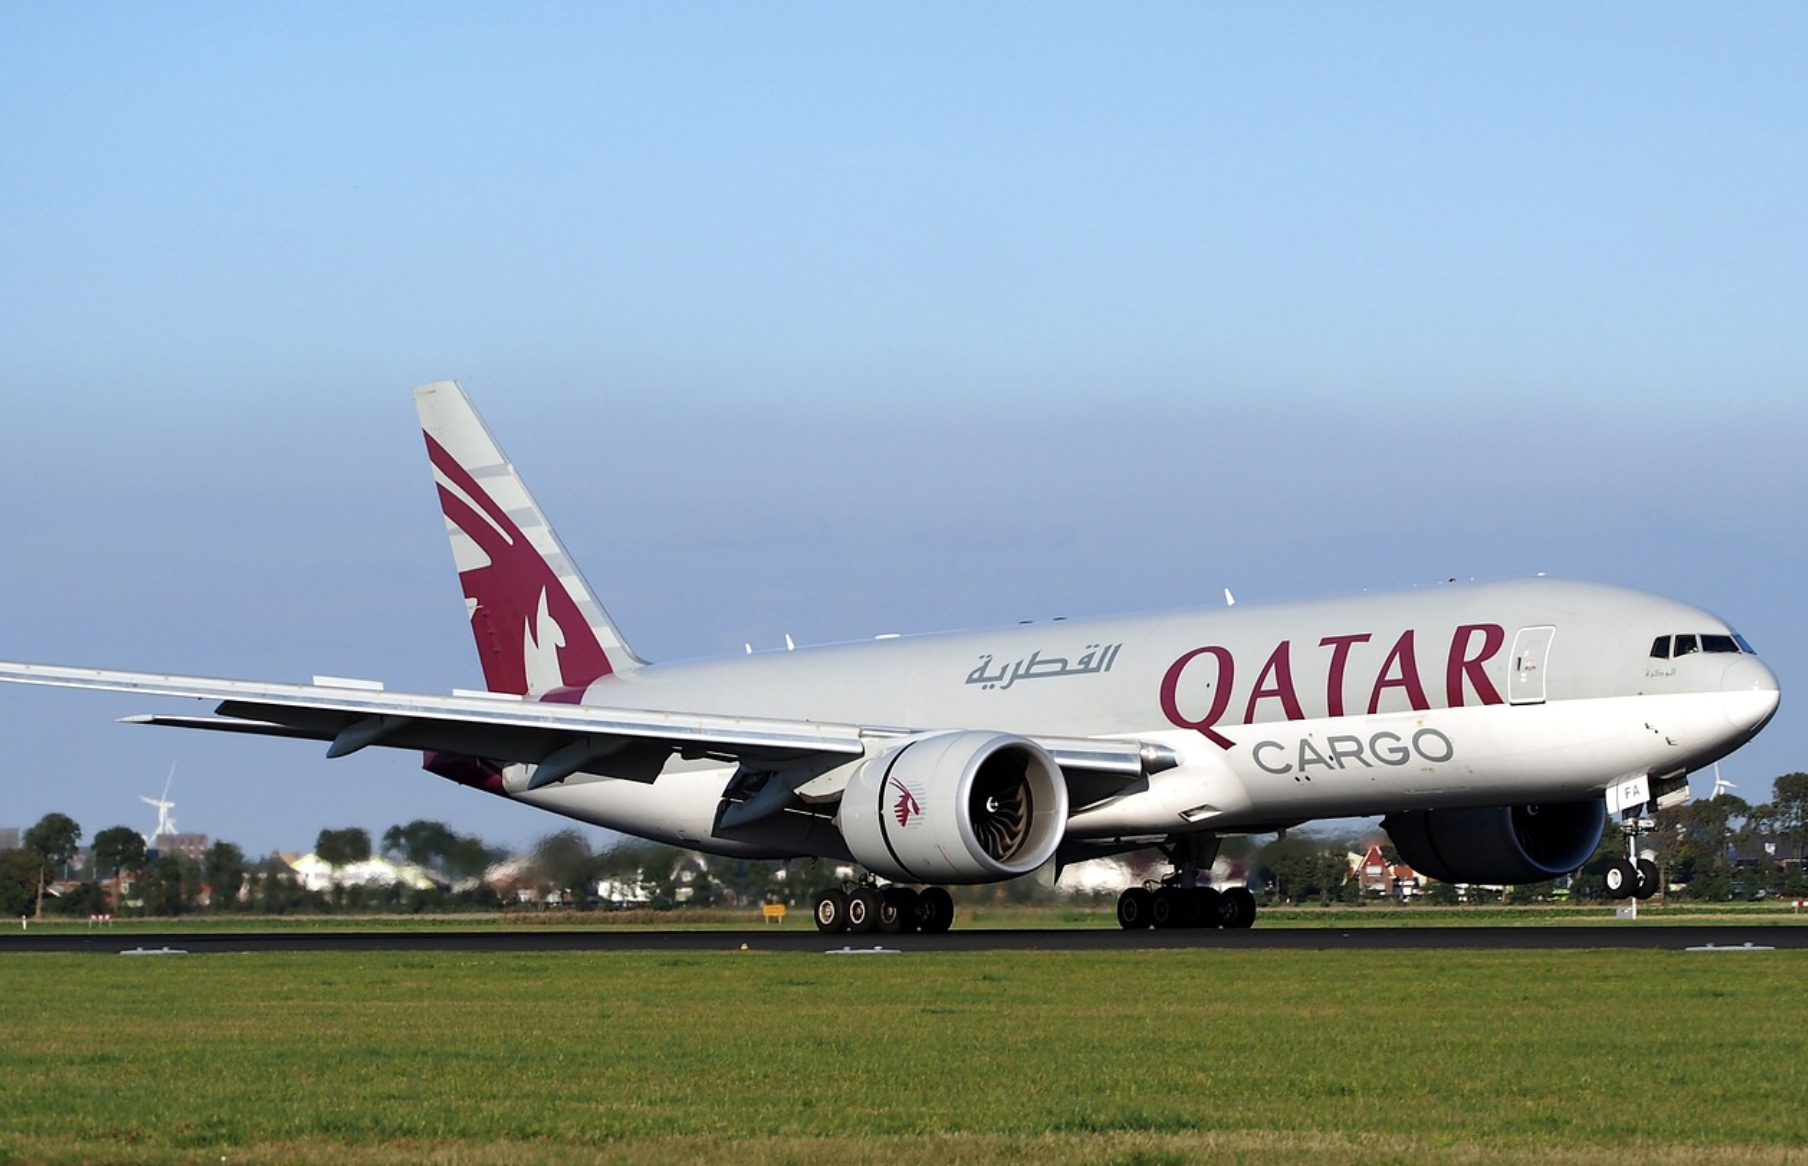 카타르 항공 이용시 도하 스탑오버 신청하는 방법&#44; 항공권 구매